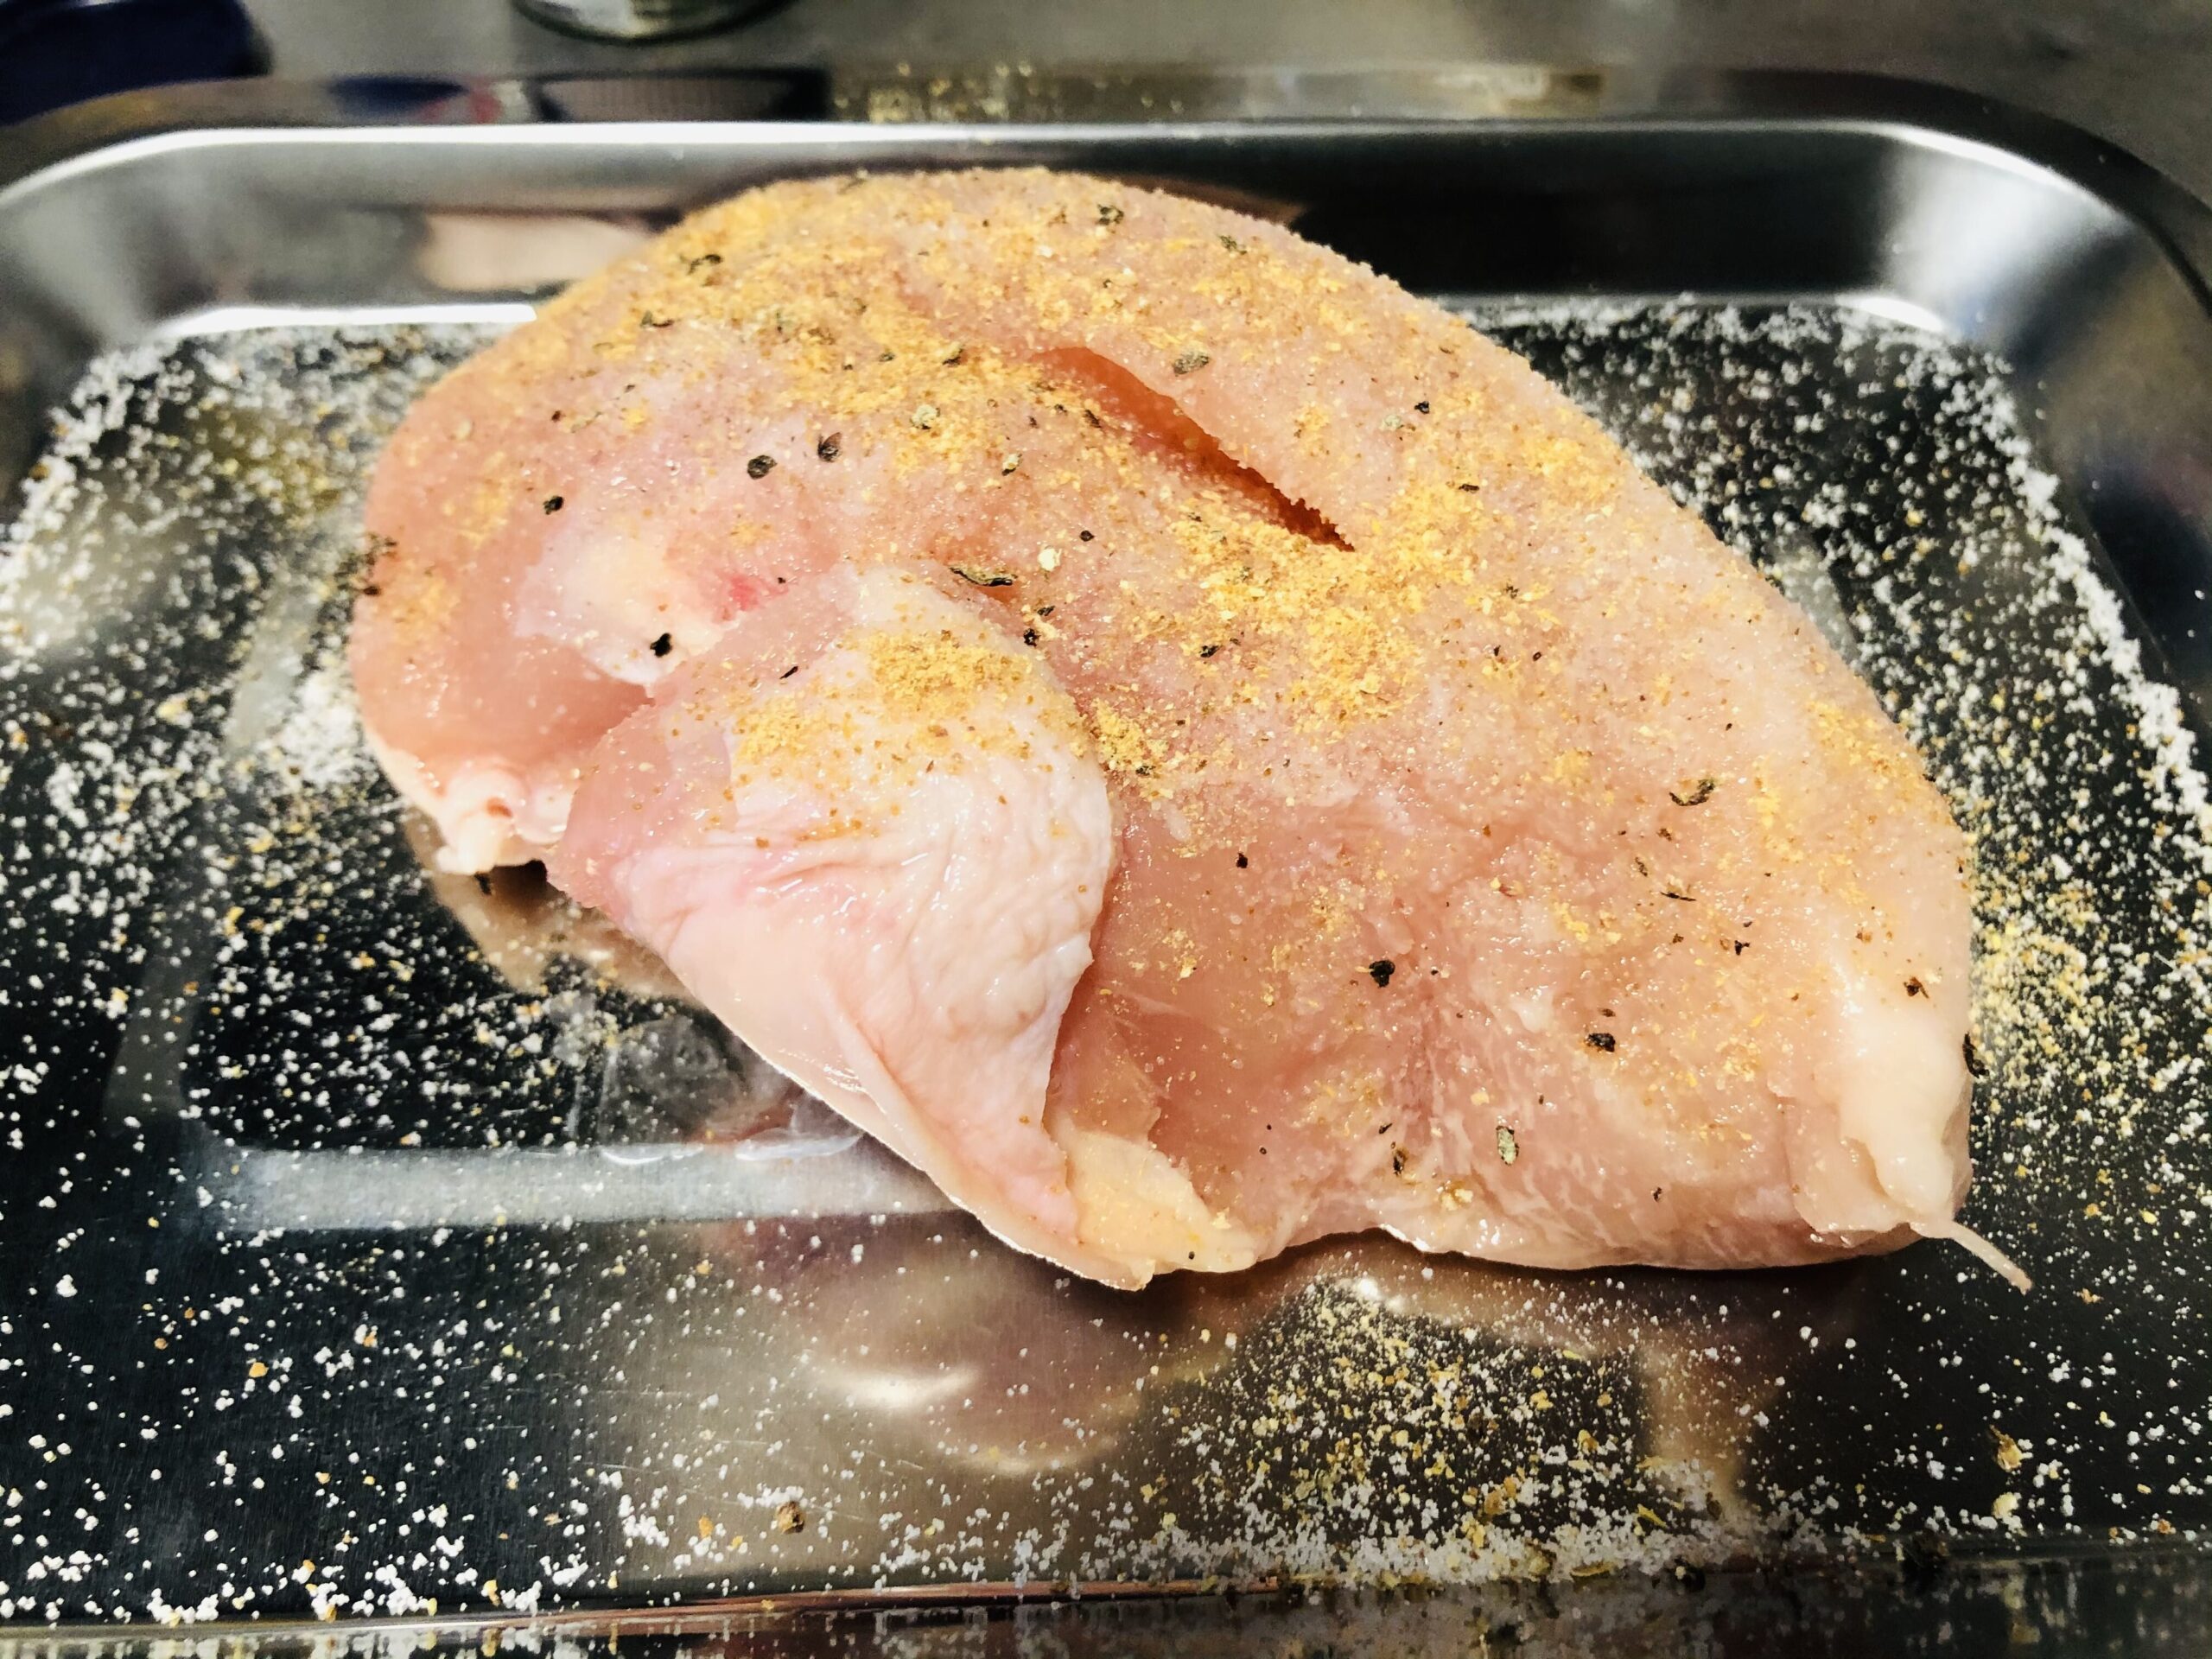 下味をつけた鶏胸肉の画像です。